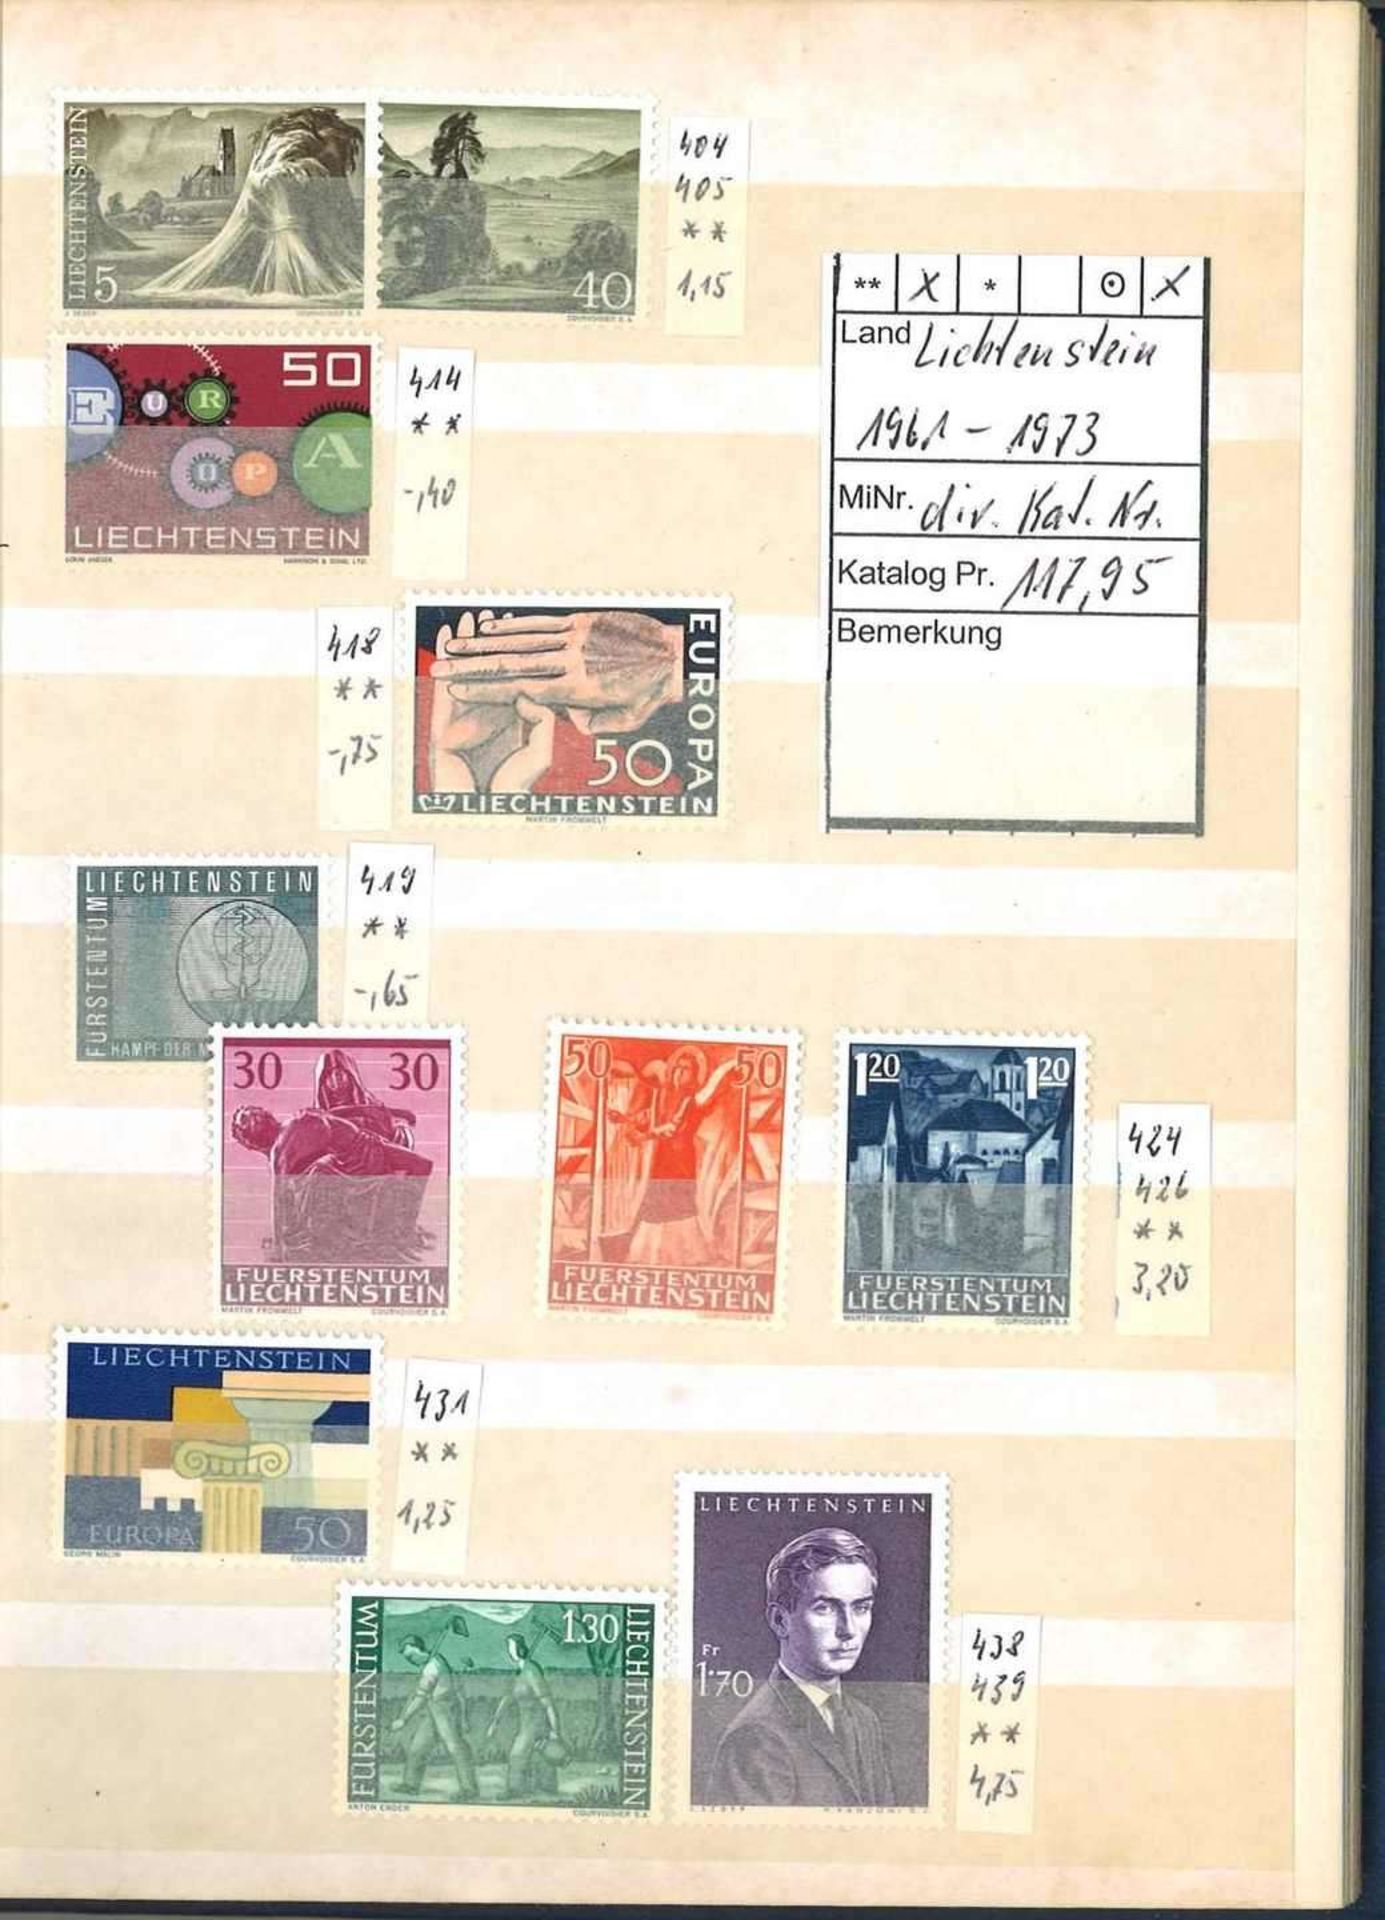 Kleine Sammlung Liechtenstein, dabei Jahrgang 1961-1973, diverse Katalognummern. Sauber gesammelt.